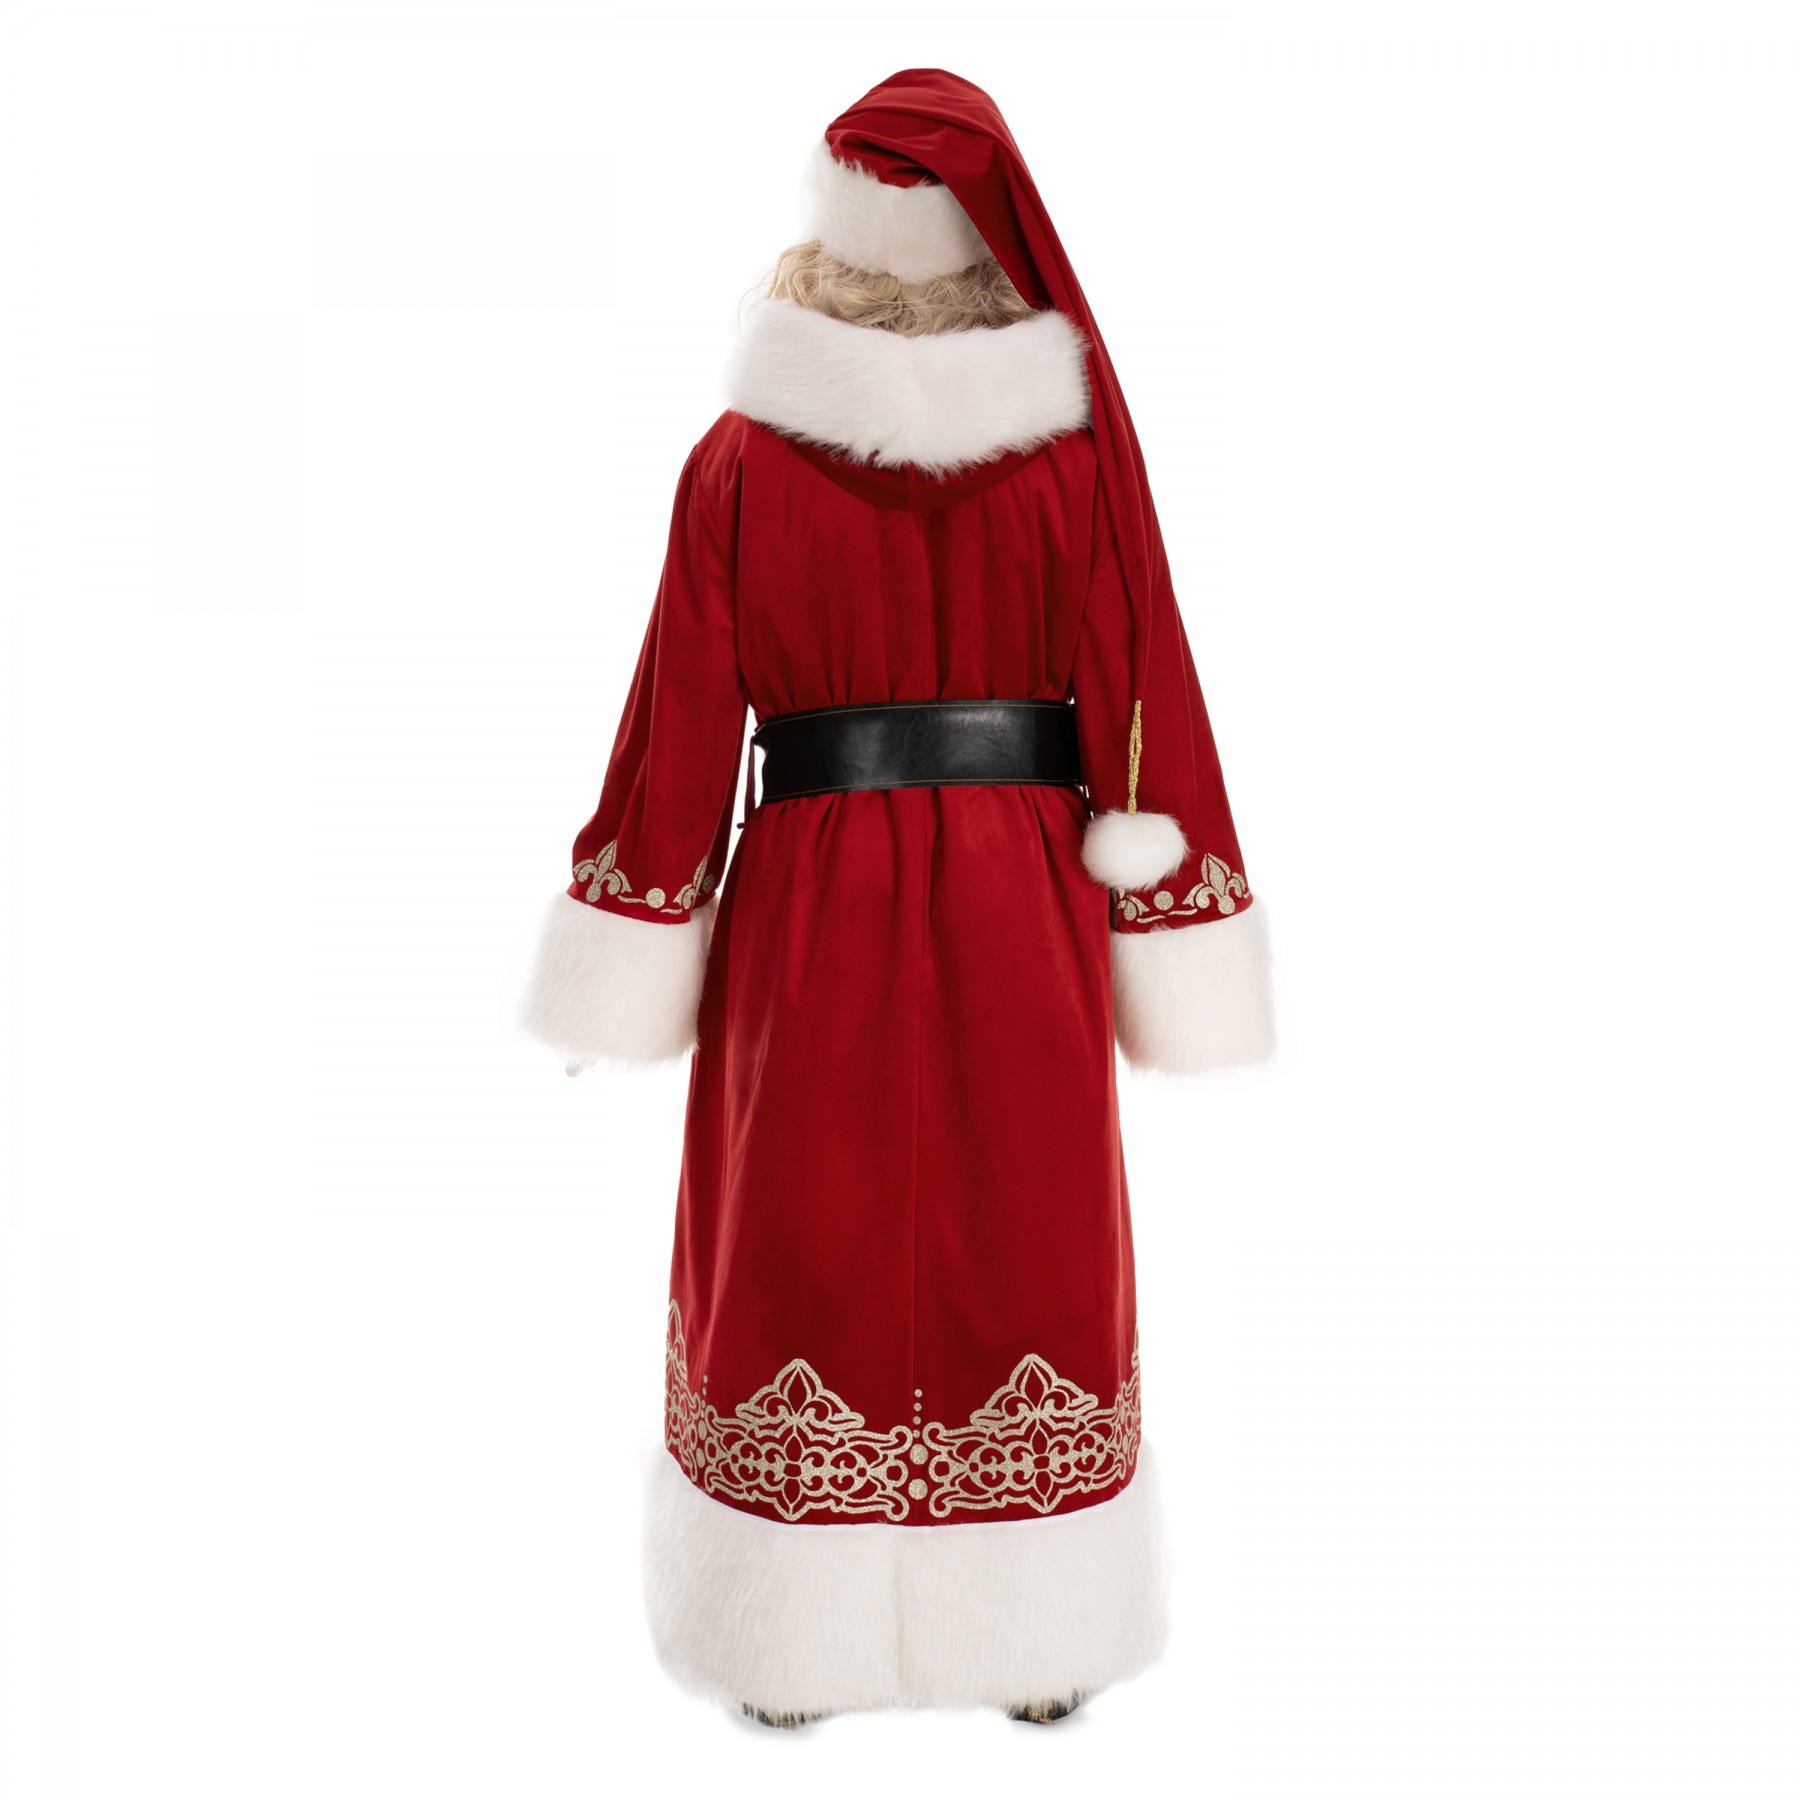 Santa Claus Lapland costume